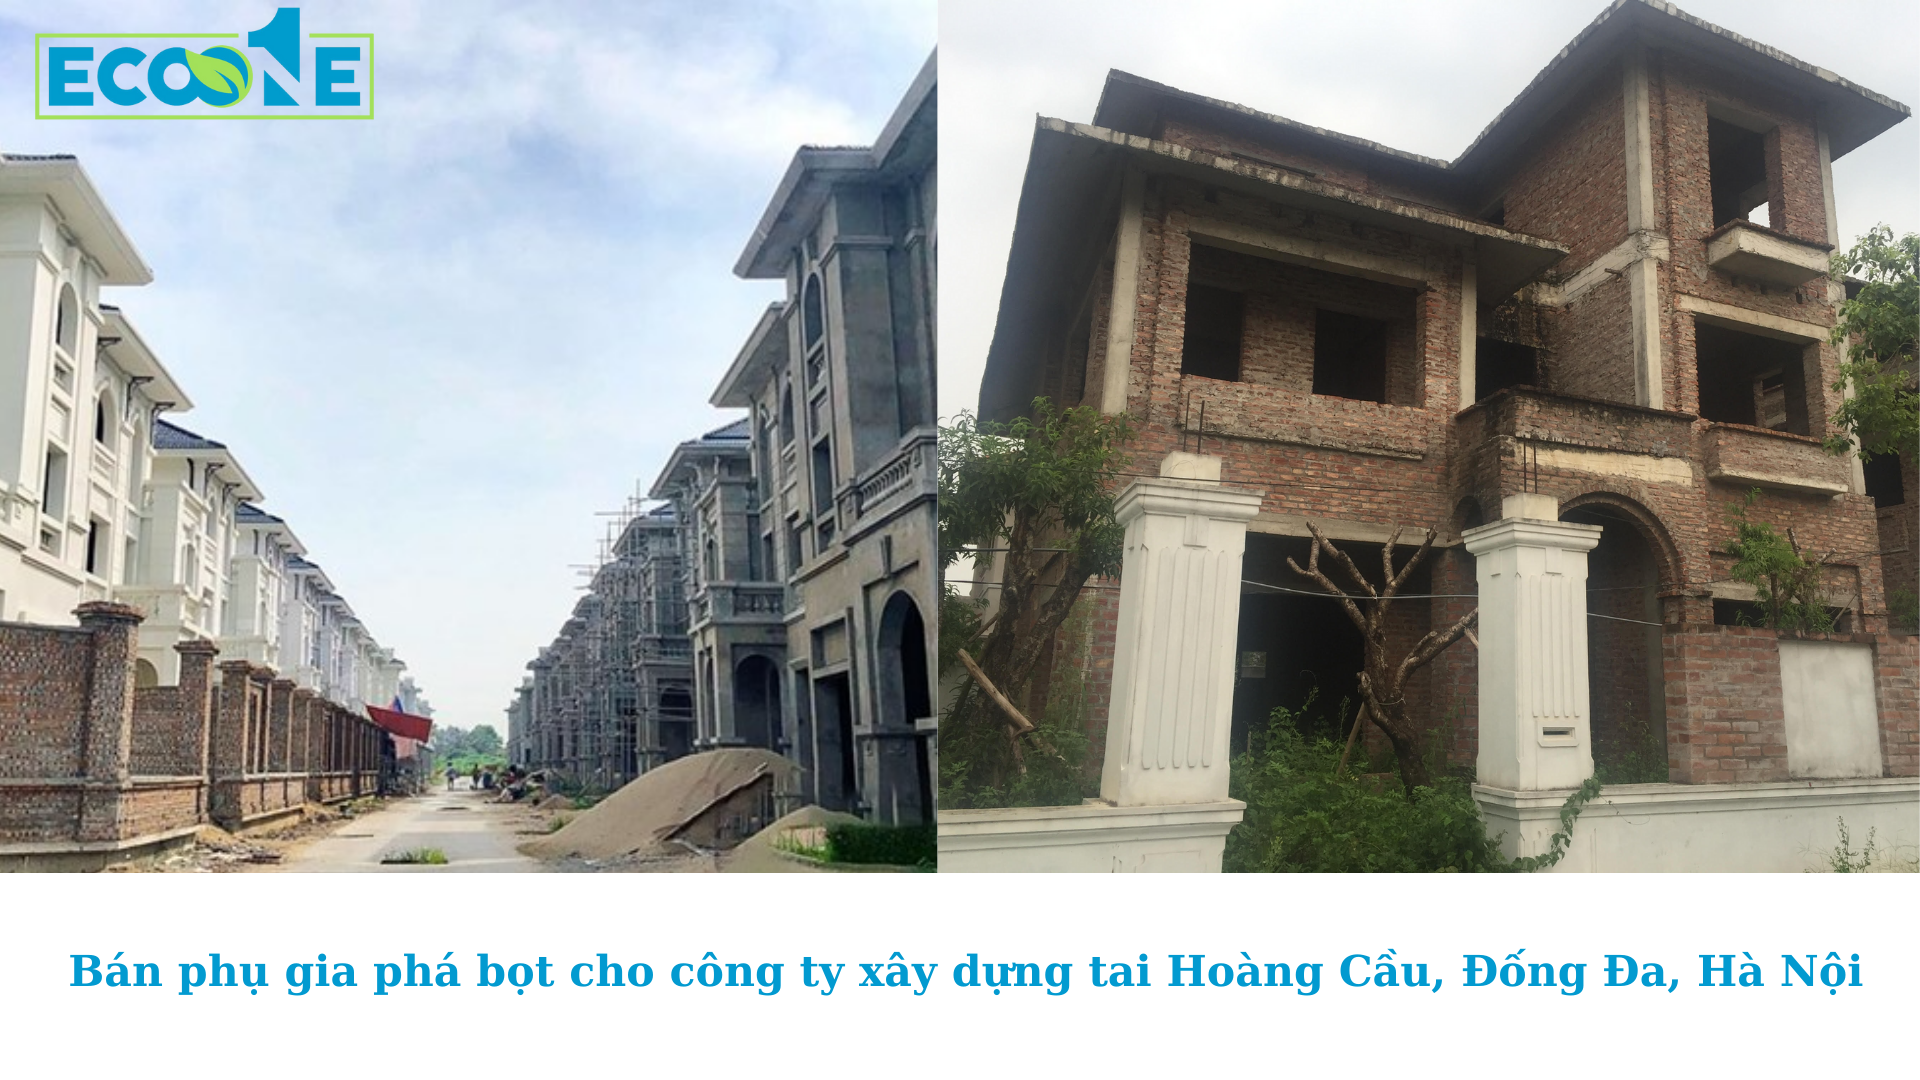 Bán phụ gia phá bọt cho công ty xây dựng tai Hoàng Cầu, Đống Đa, Hà Nội